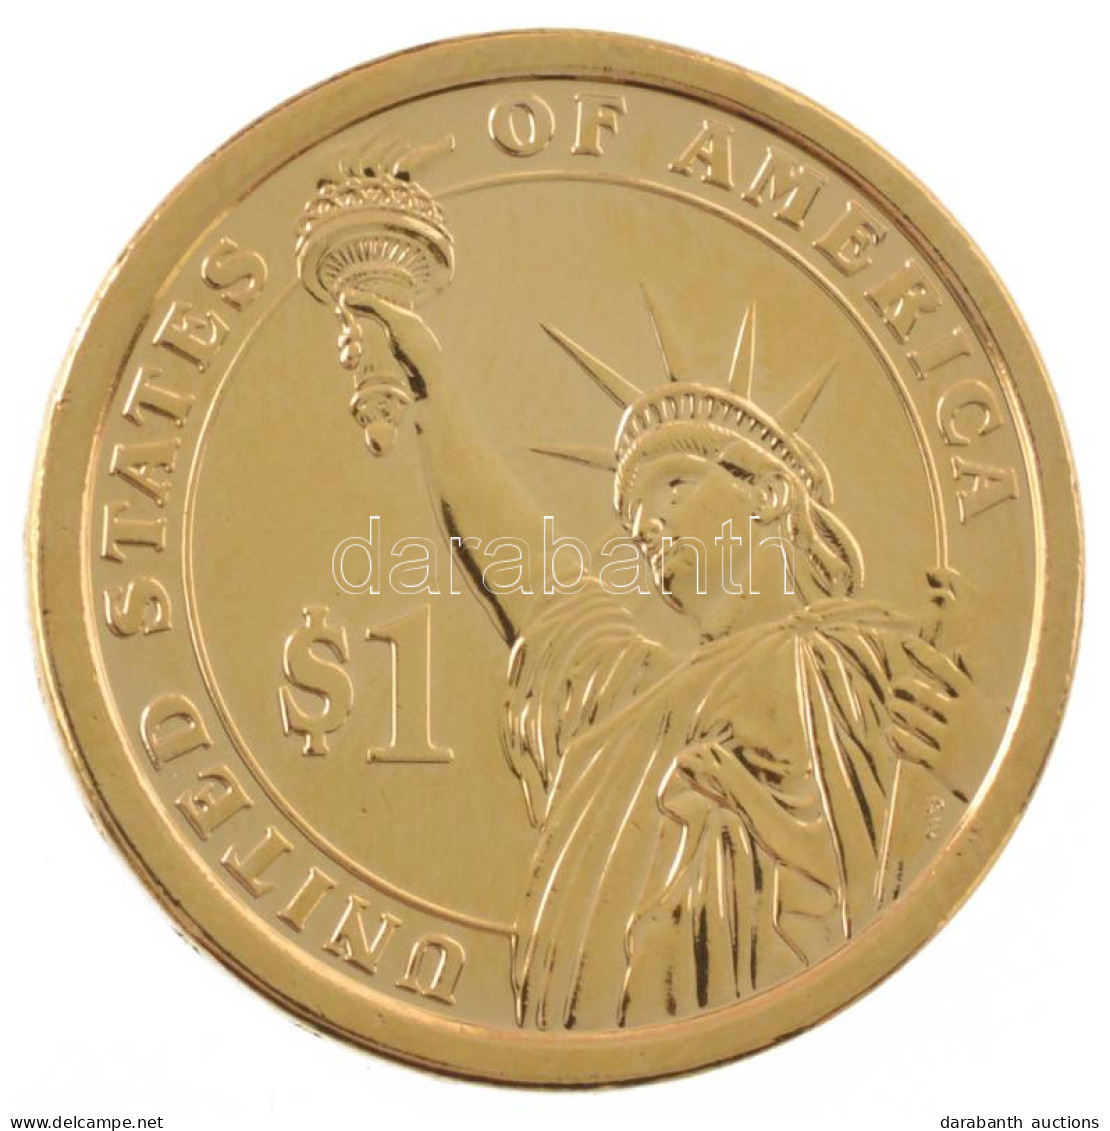 Amerikai Egyesült Államok 2012P 1$ Aranyozott Cu-Ni-Zn "Elnöki Dollárok - Benjamin Harrison" Kapszulában T:UNC USA 2012P - Unclassified